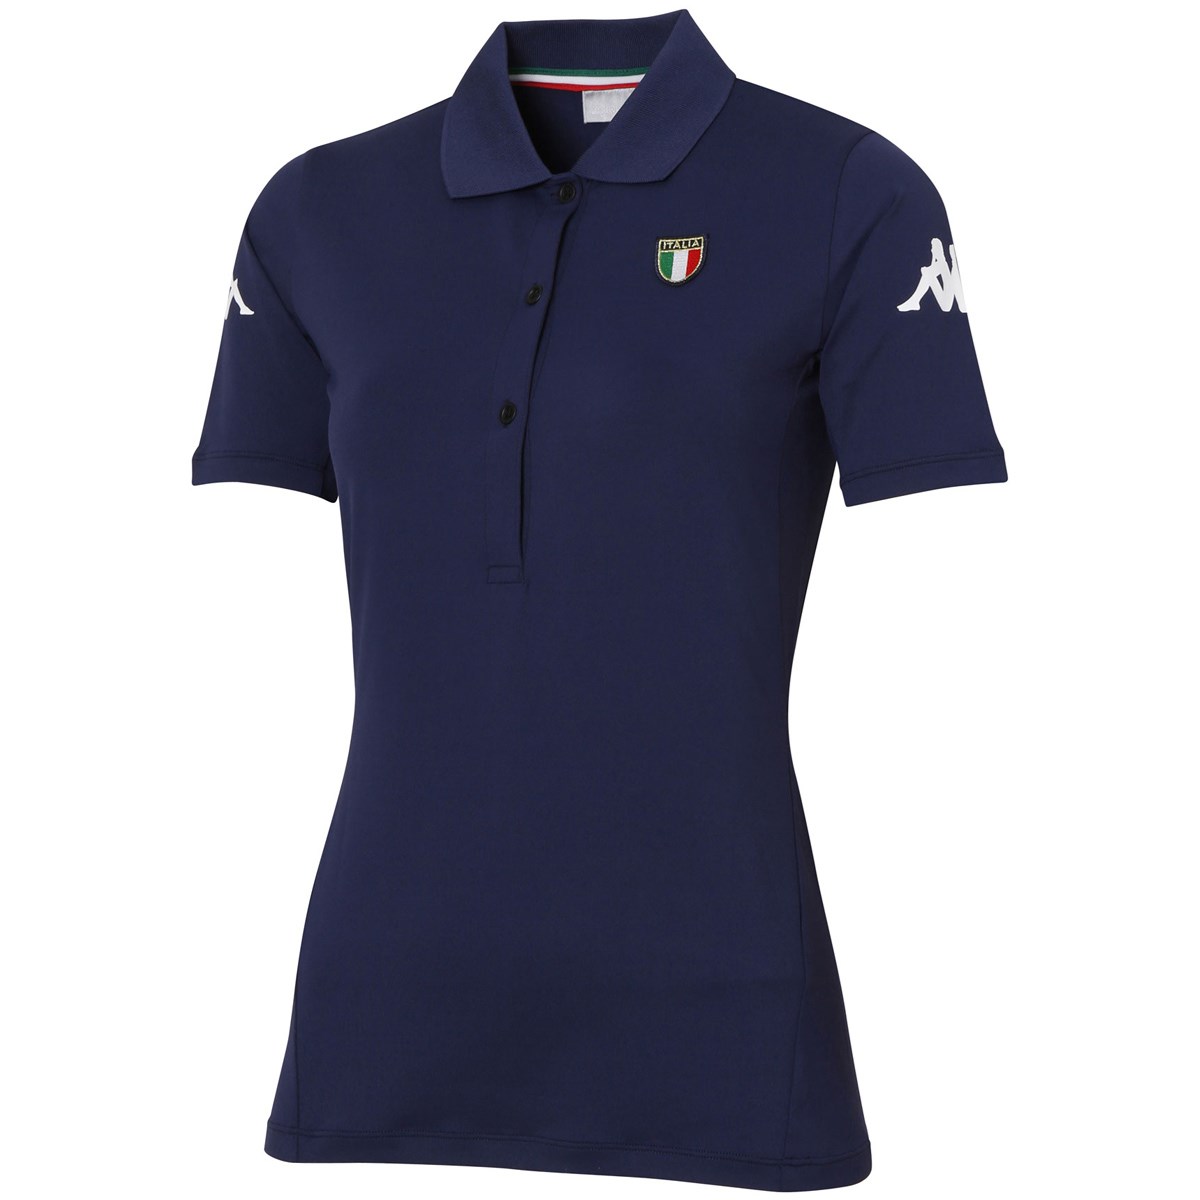  [アウトレット] [在庫限りのお買い得商品] カッパ ITALIA ストレッチ バックロゴ半袖ポロシャツ ゴルフウェア